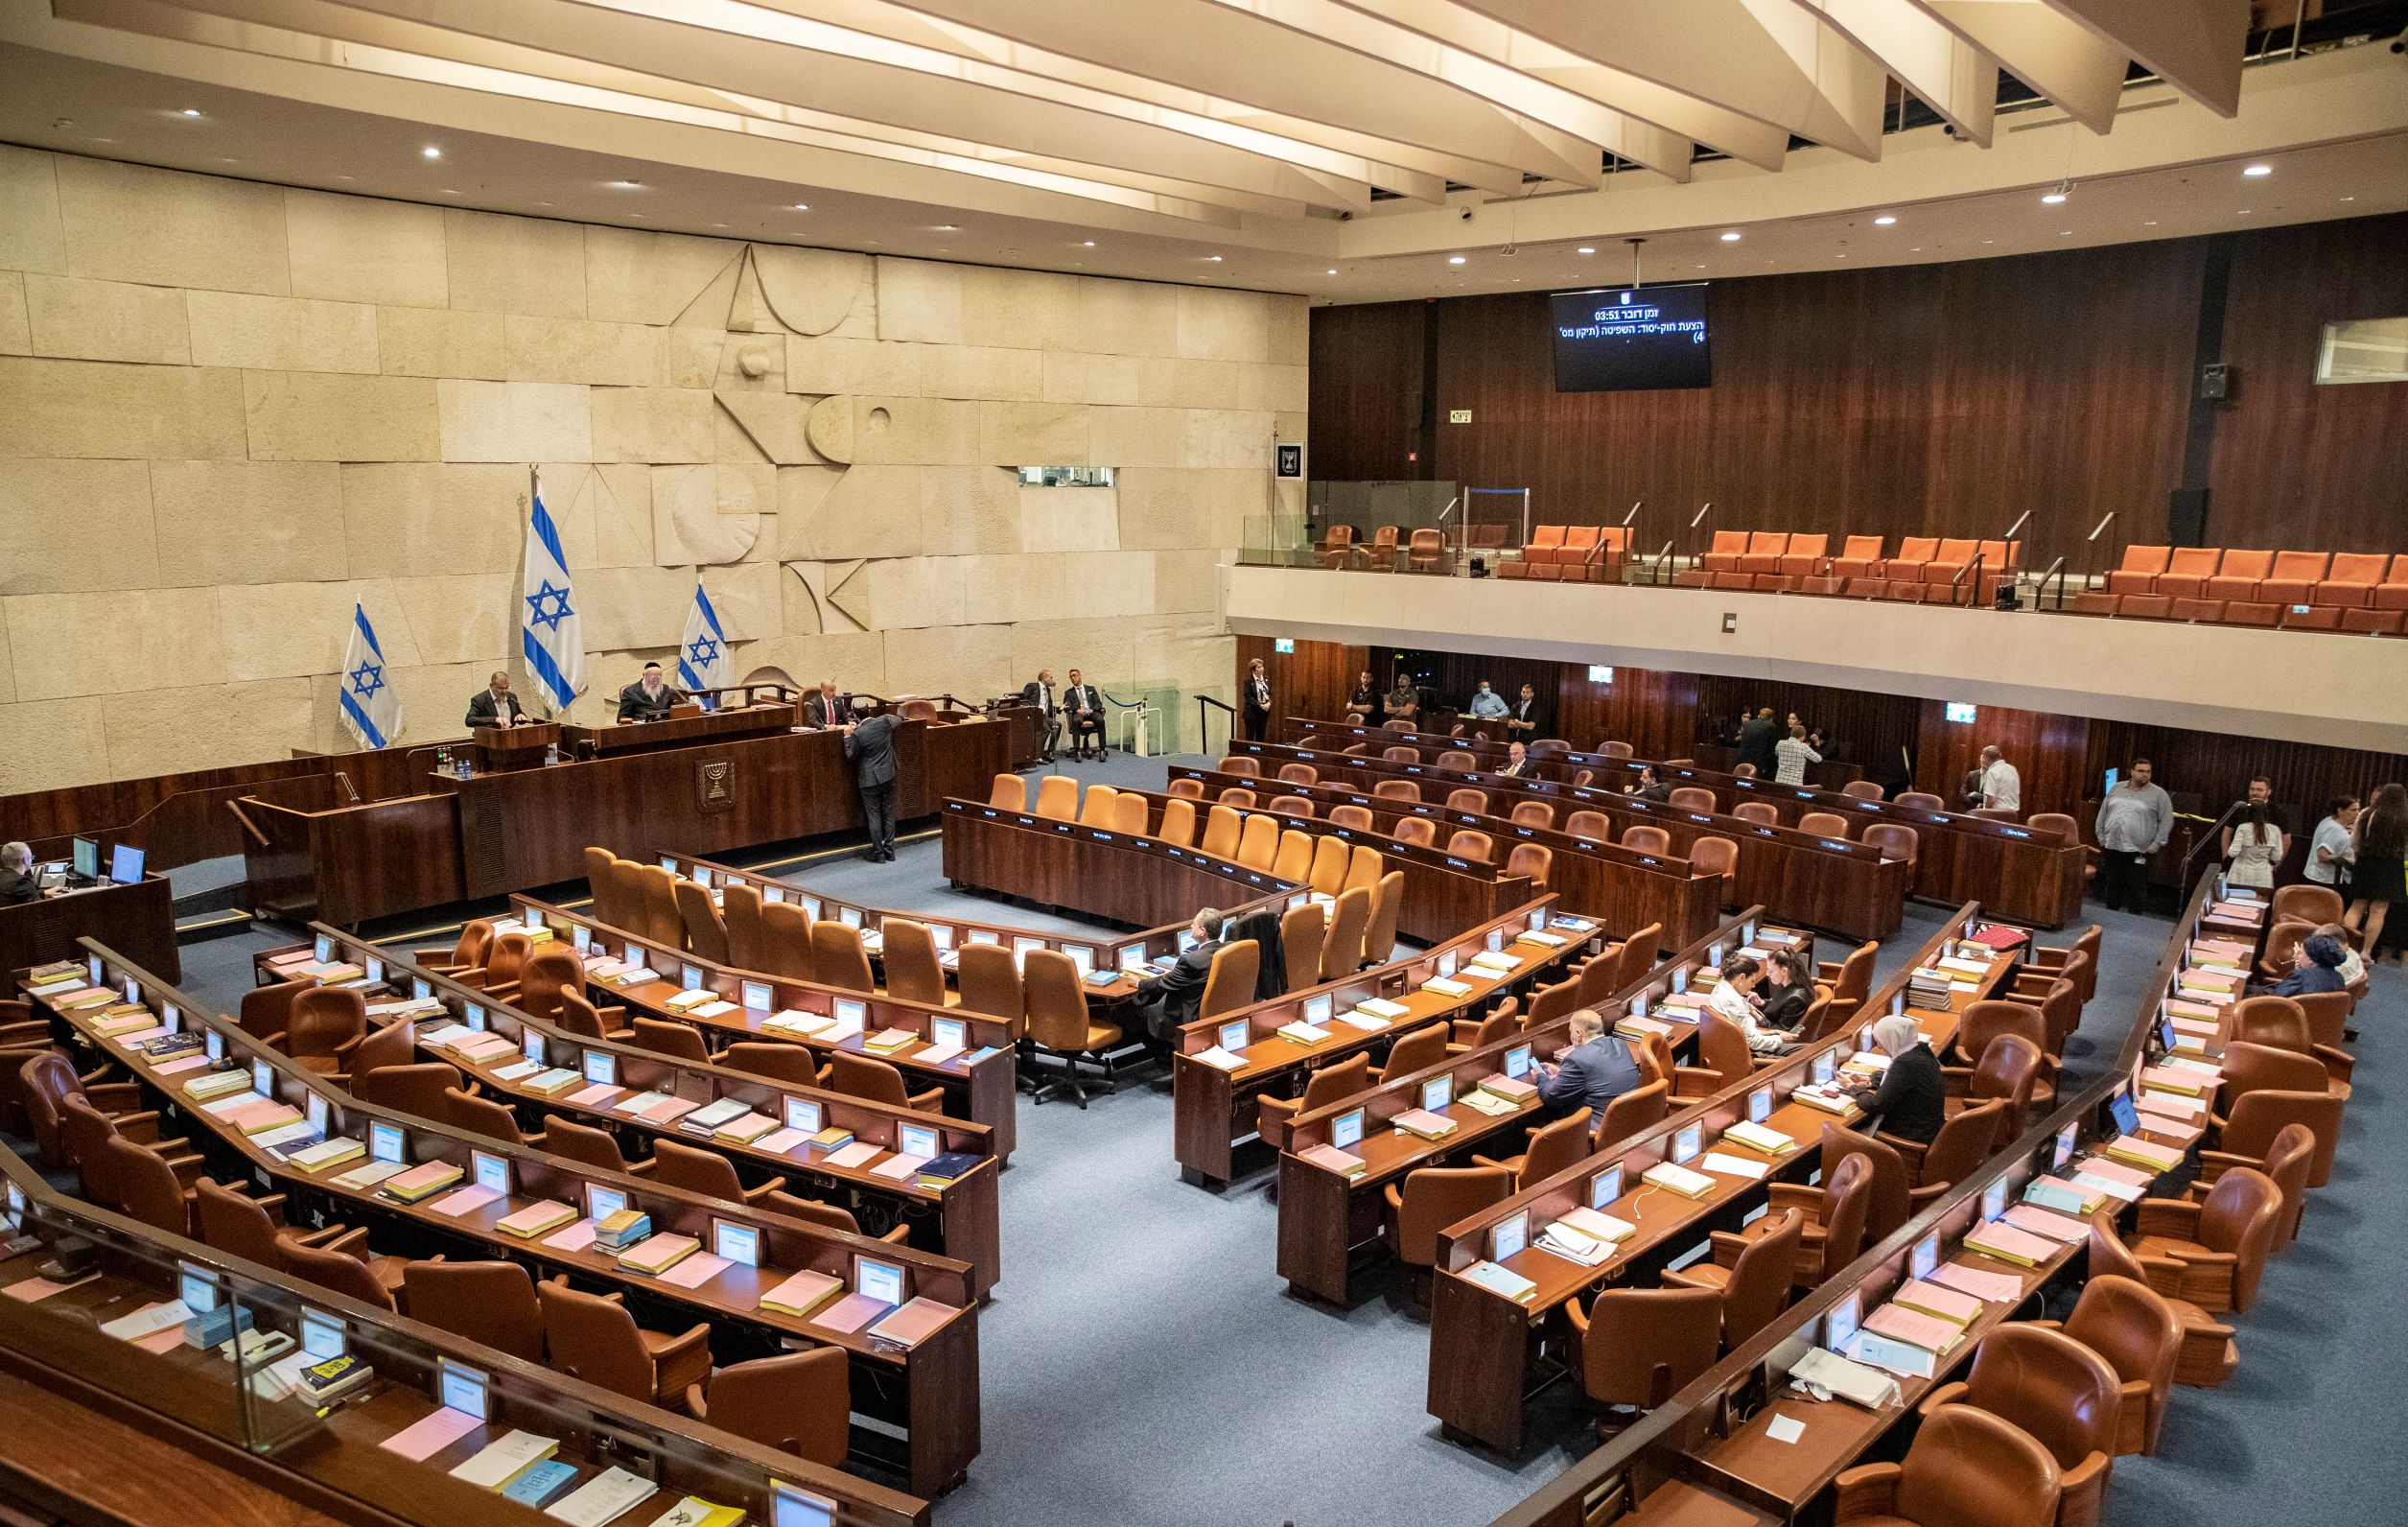 以色列总统赫尔佐格正式授权内塔尼亚胡组建新政府